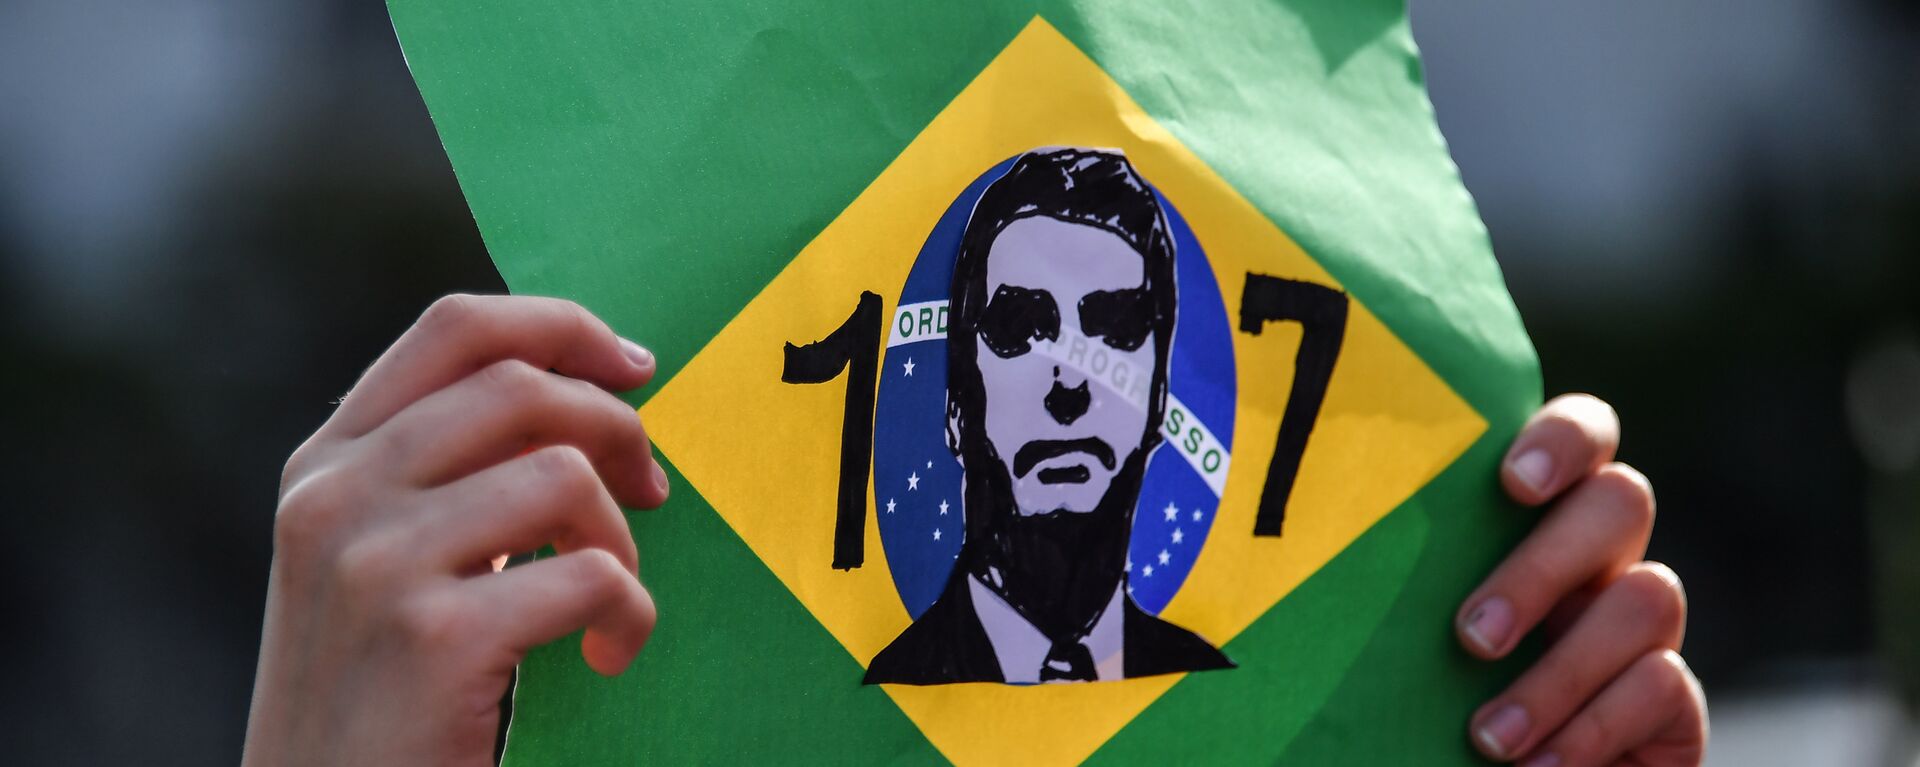 Simpatizante exibe homenagem a Jair Bolsonaro, candidato à presidência do Brasil pelo PSL, durante ato em frente ao hospital Albert Einstein, em São Paulo - Sputnik Brasil, 1920, 28.09.2018